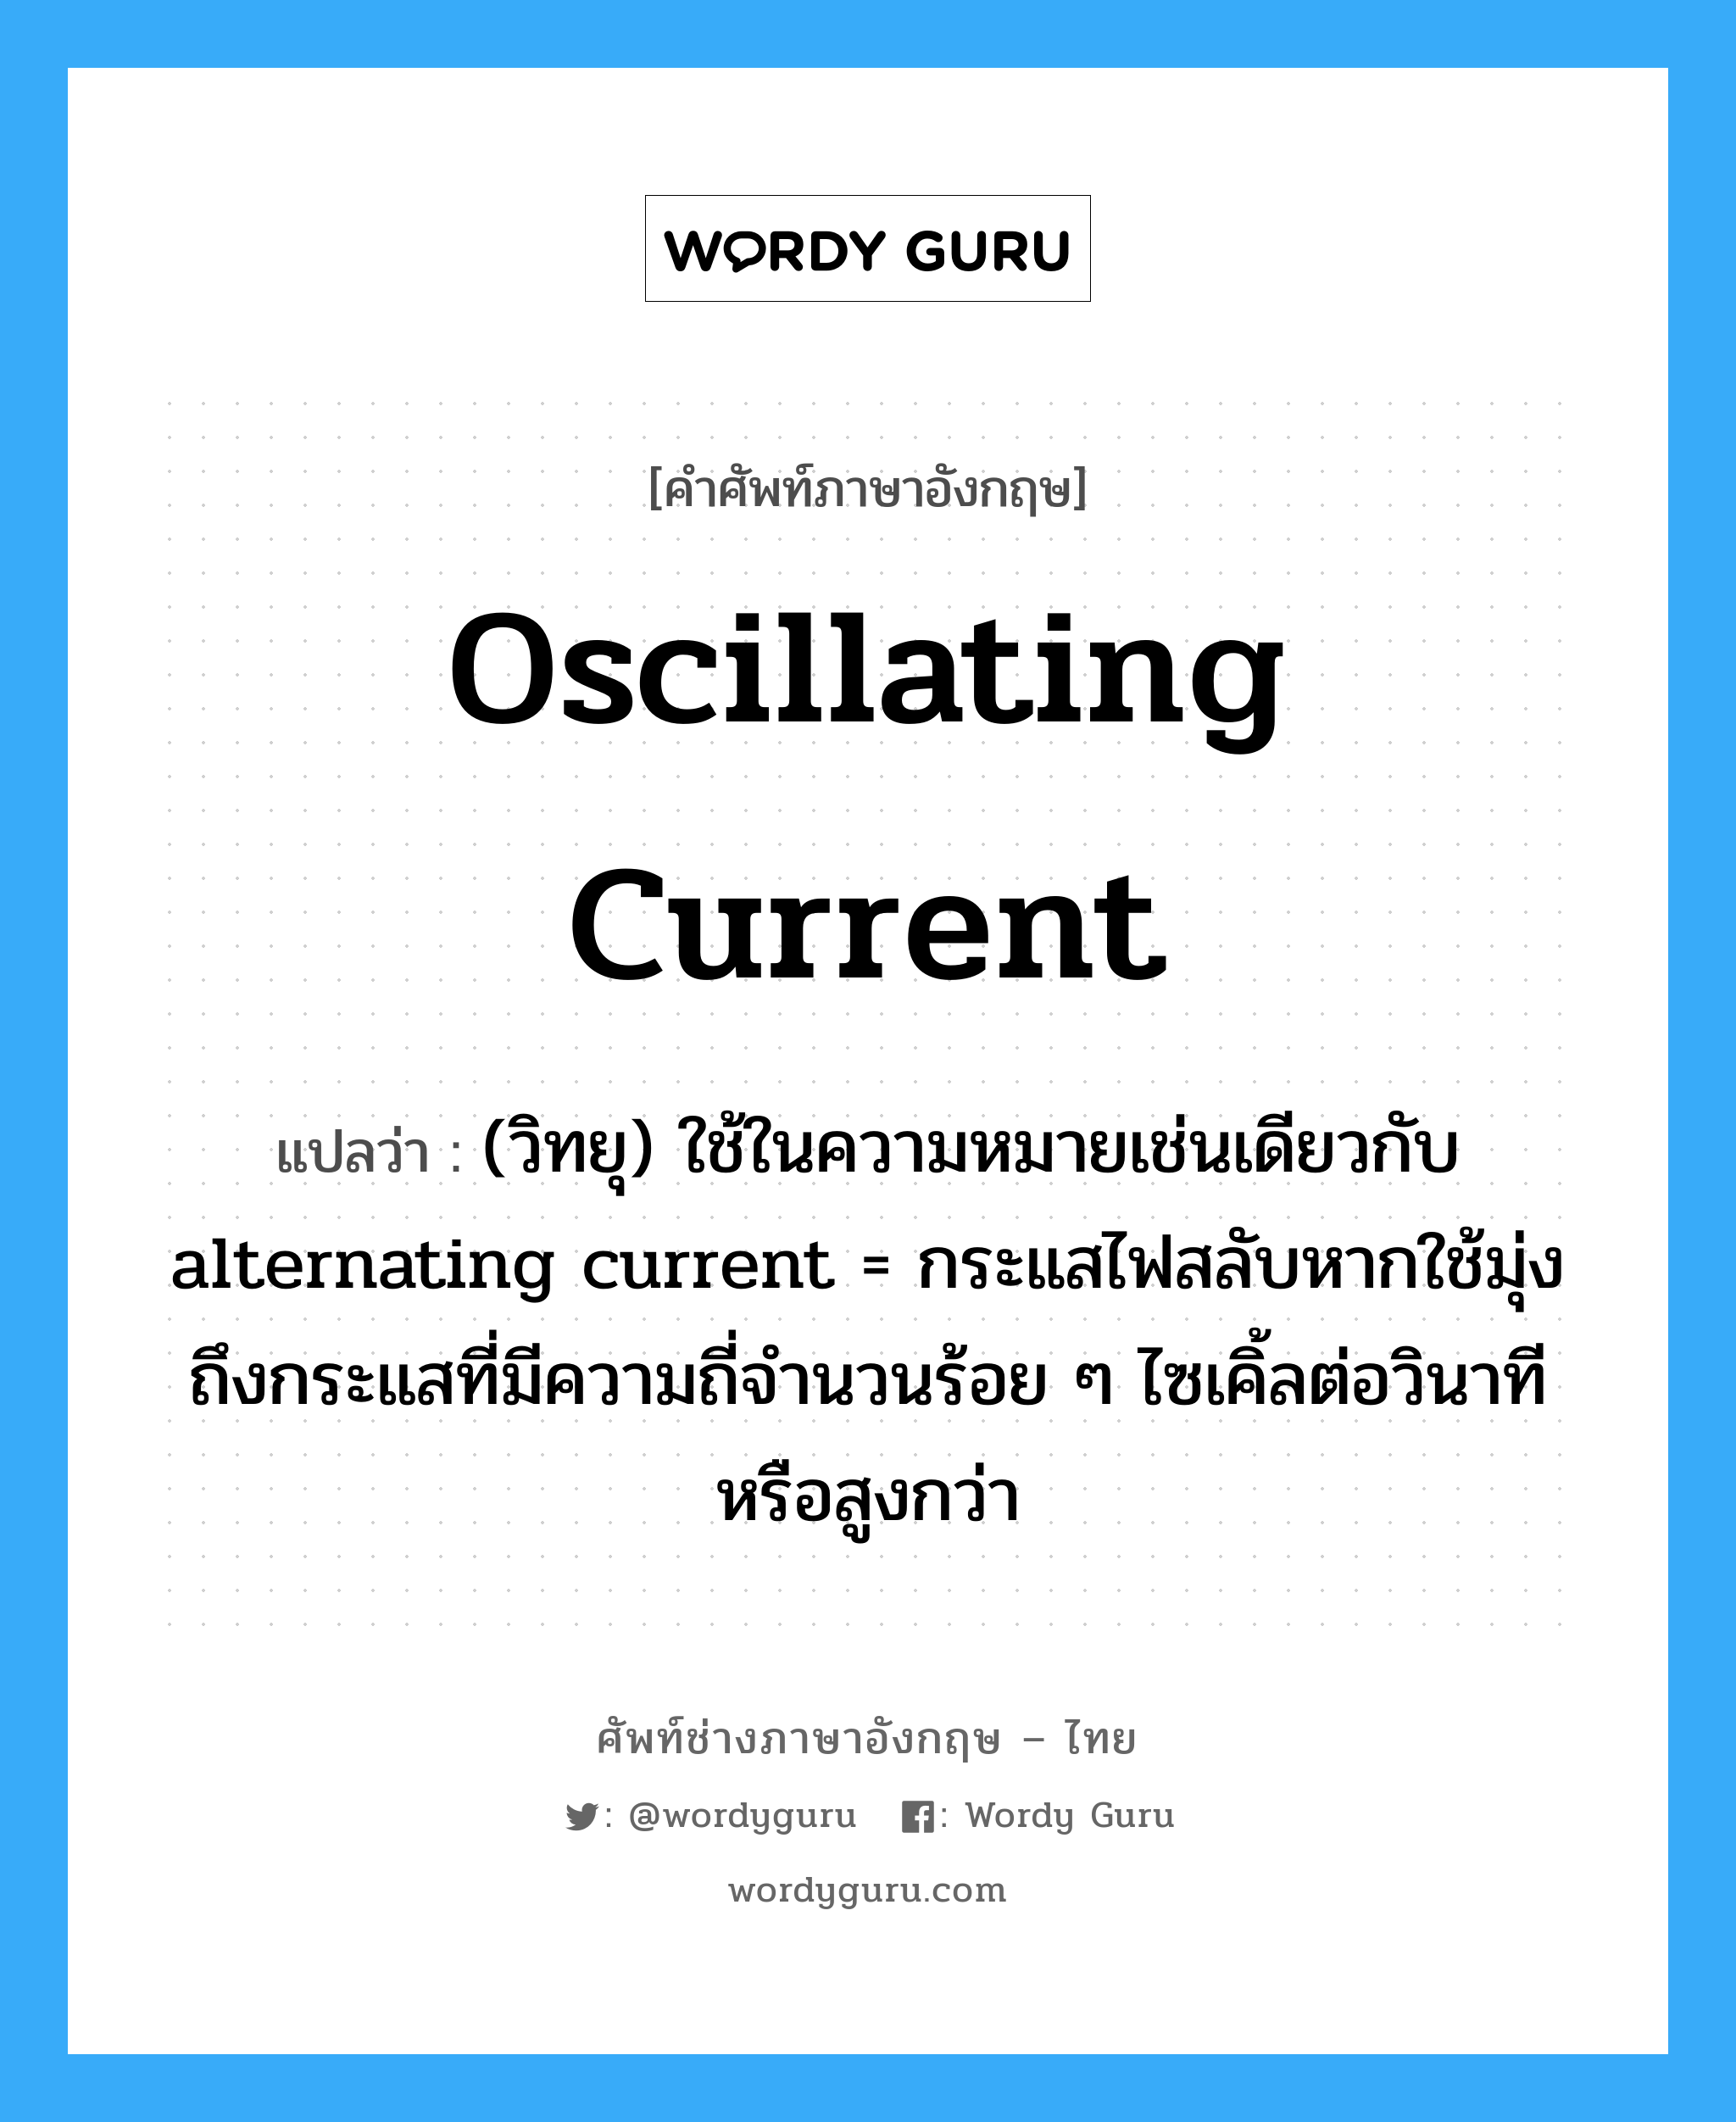 oscillating current แปลว่า?, คำศัพท์ช่างภาษาอังกฤษ - ไทย oscillating current คำศัพท์ภาษาอังกฤษ oscillating current แปลว่า (วิทยุ) ใช้ในความหมายเช่นเดียวกับ alternating current = กระแสไฟสลับหากใช้มุ่งถึงกระแสที่มีความถี่จำนวนร้อย ๆ ไซเคิ้ลต่อวินาที หรือสูงกว่า